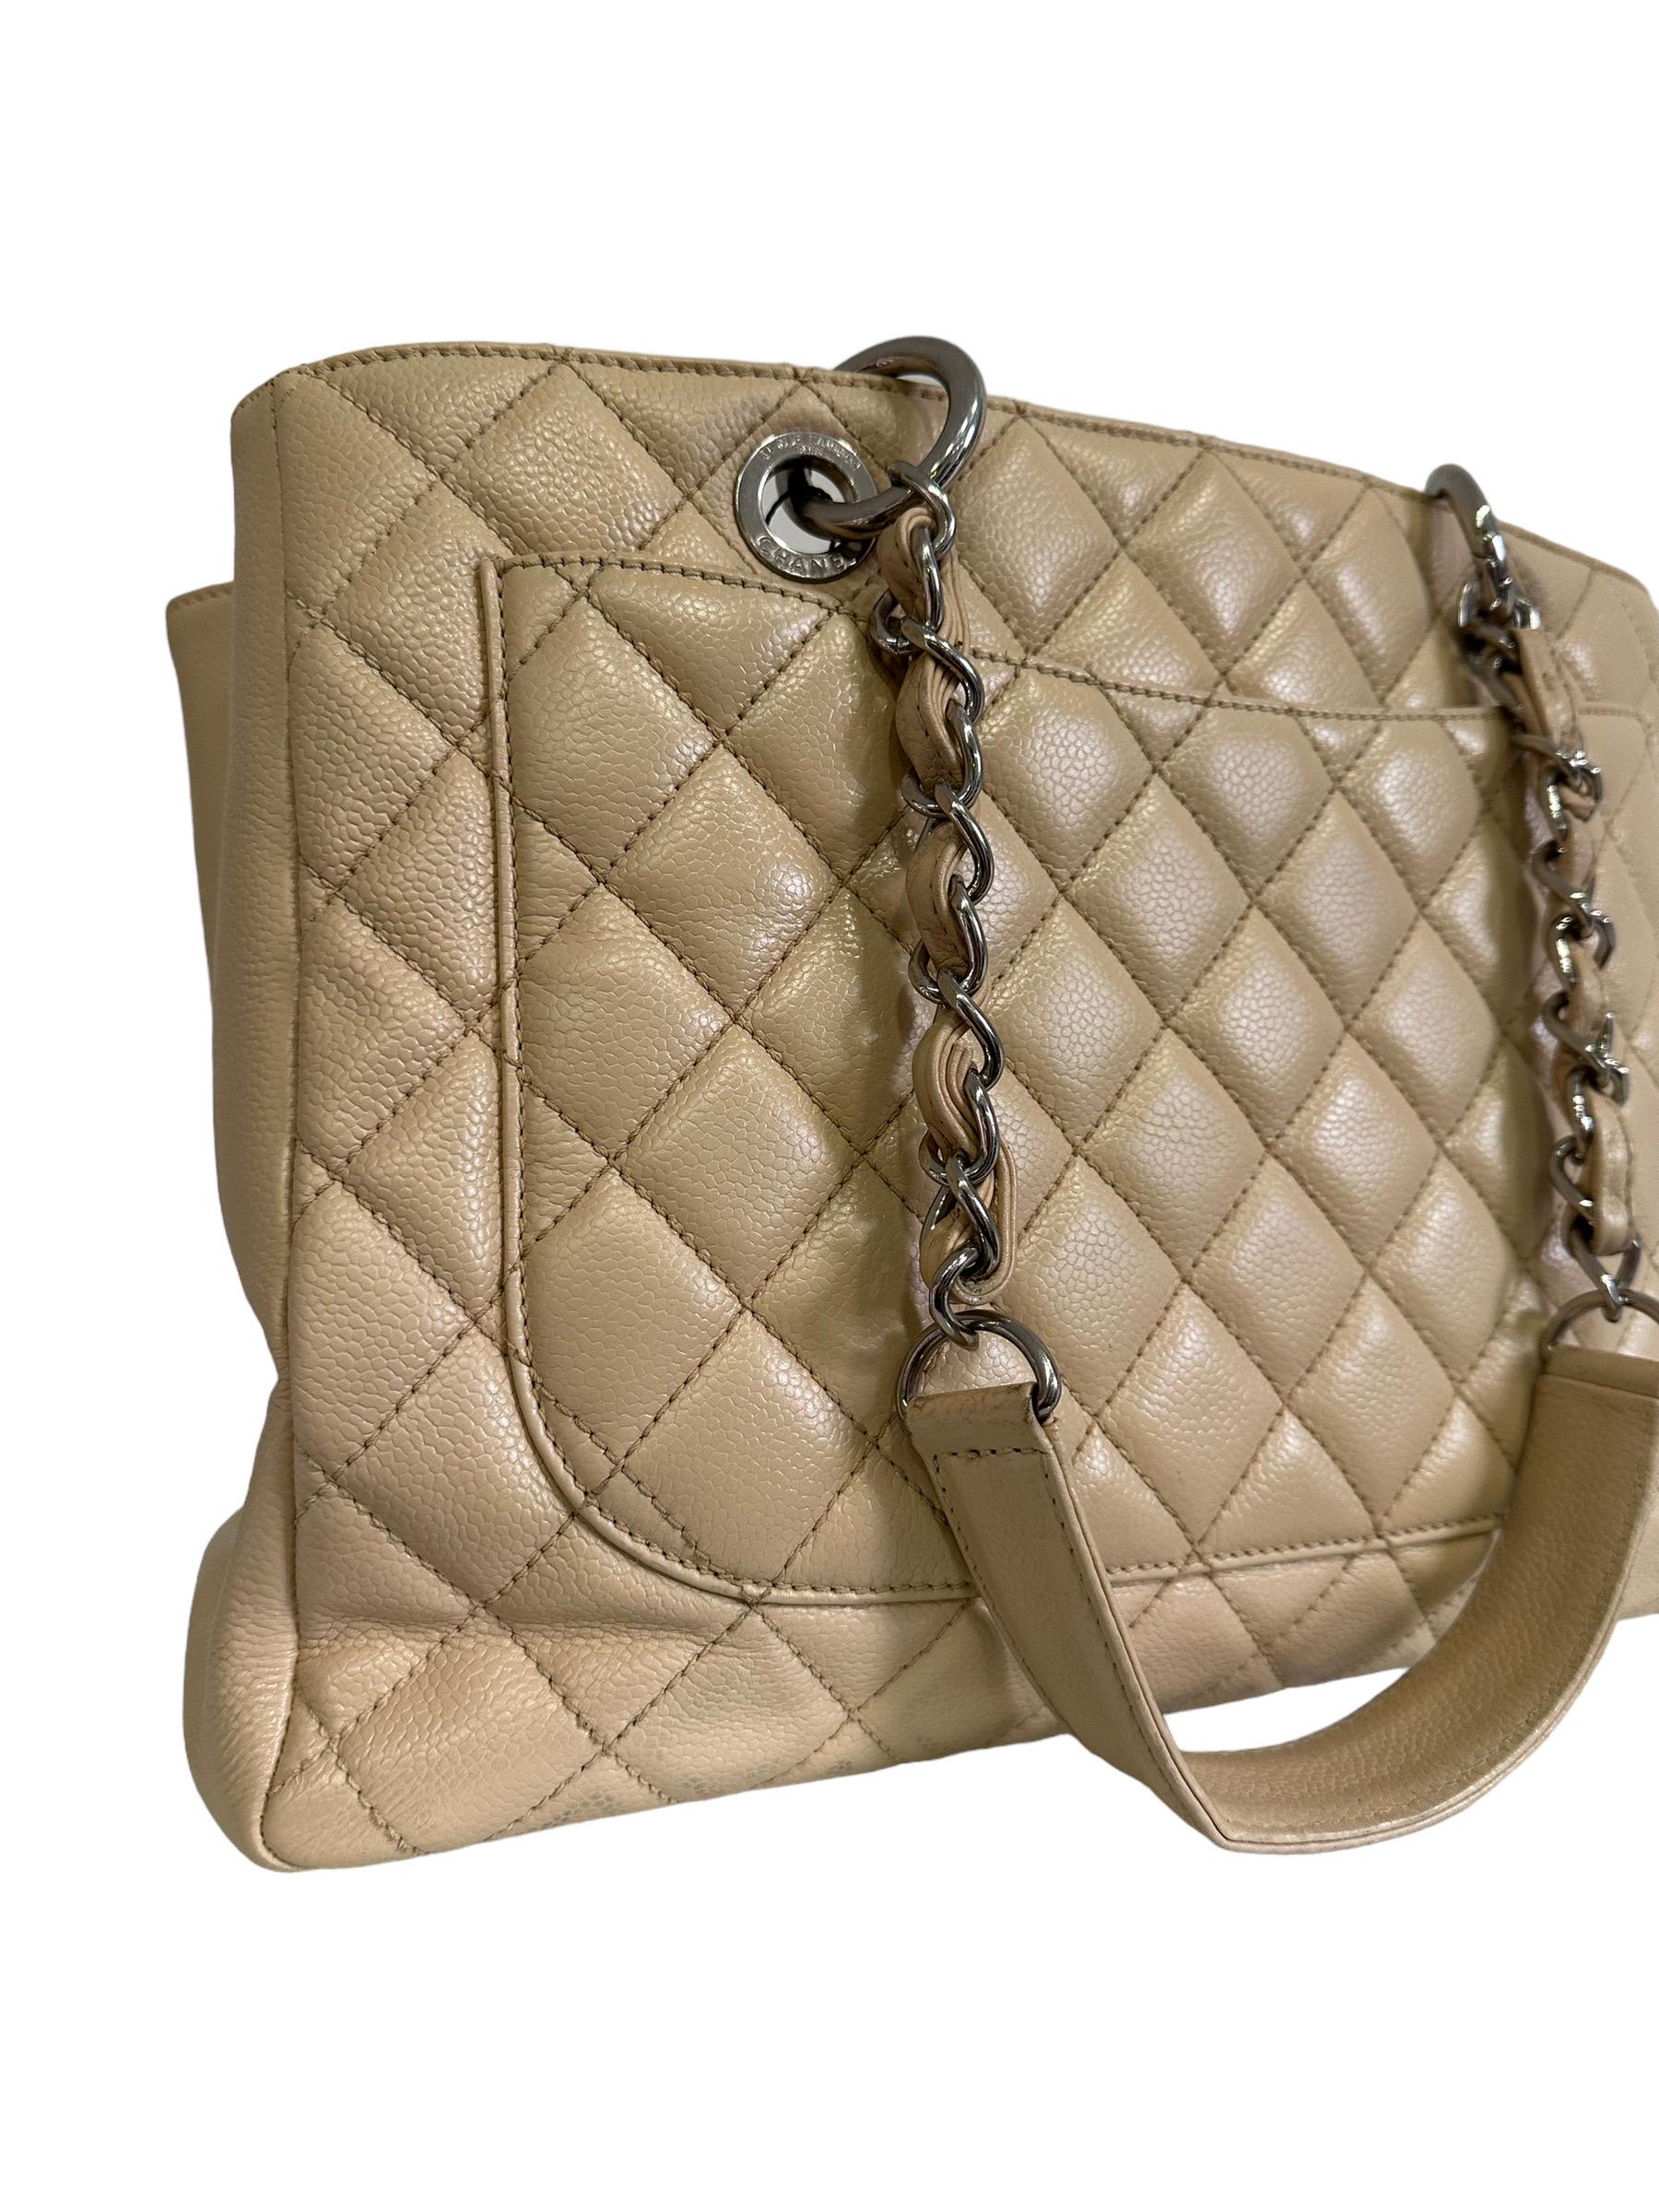 2014 Chanel Beige Leather GST Shoulder Bag For Sale 1